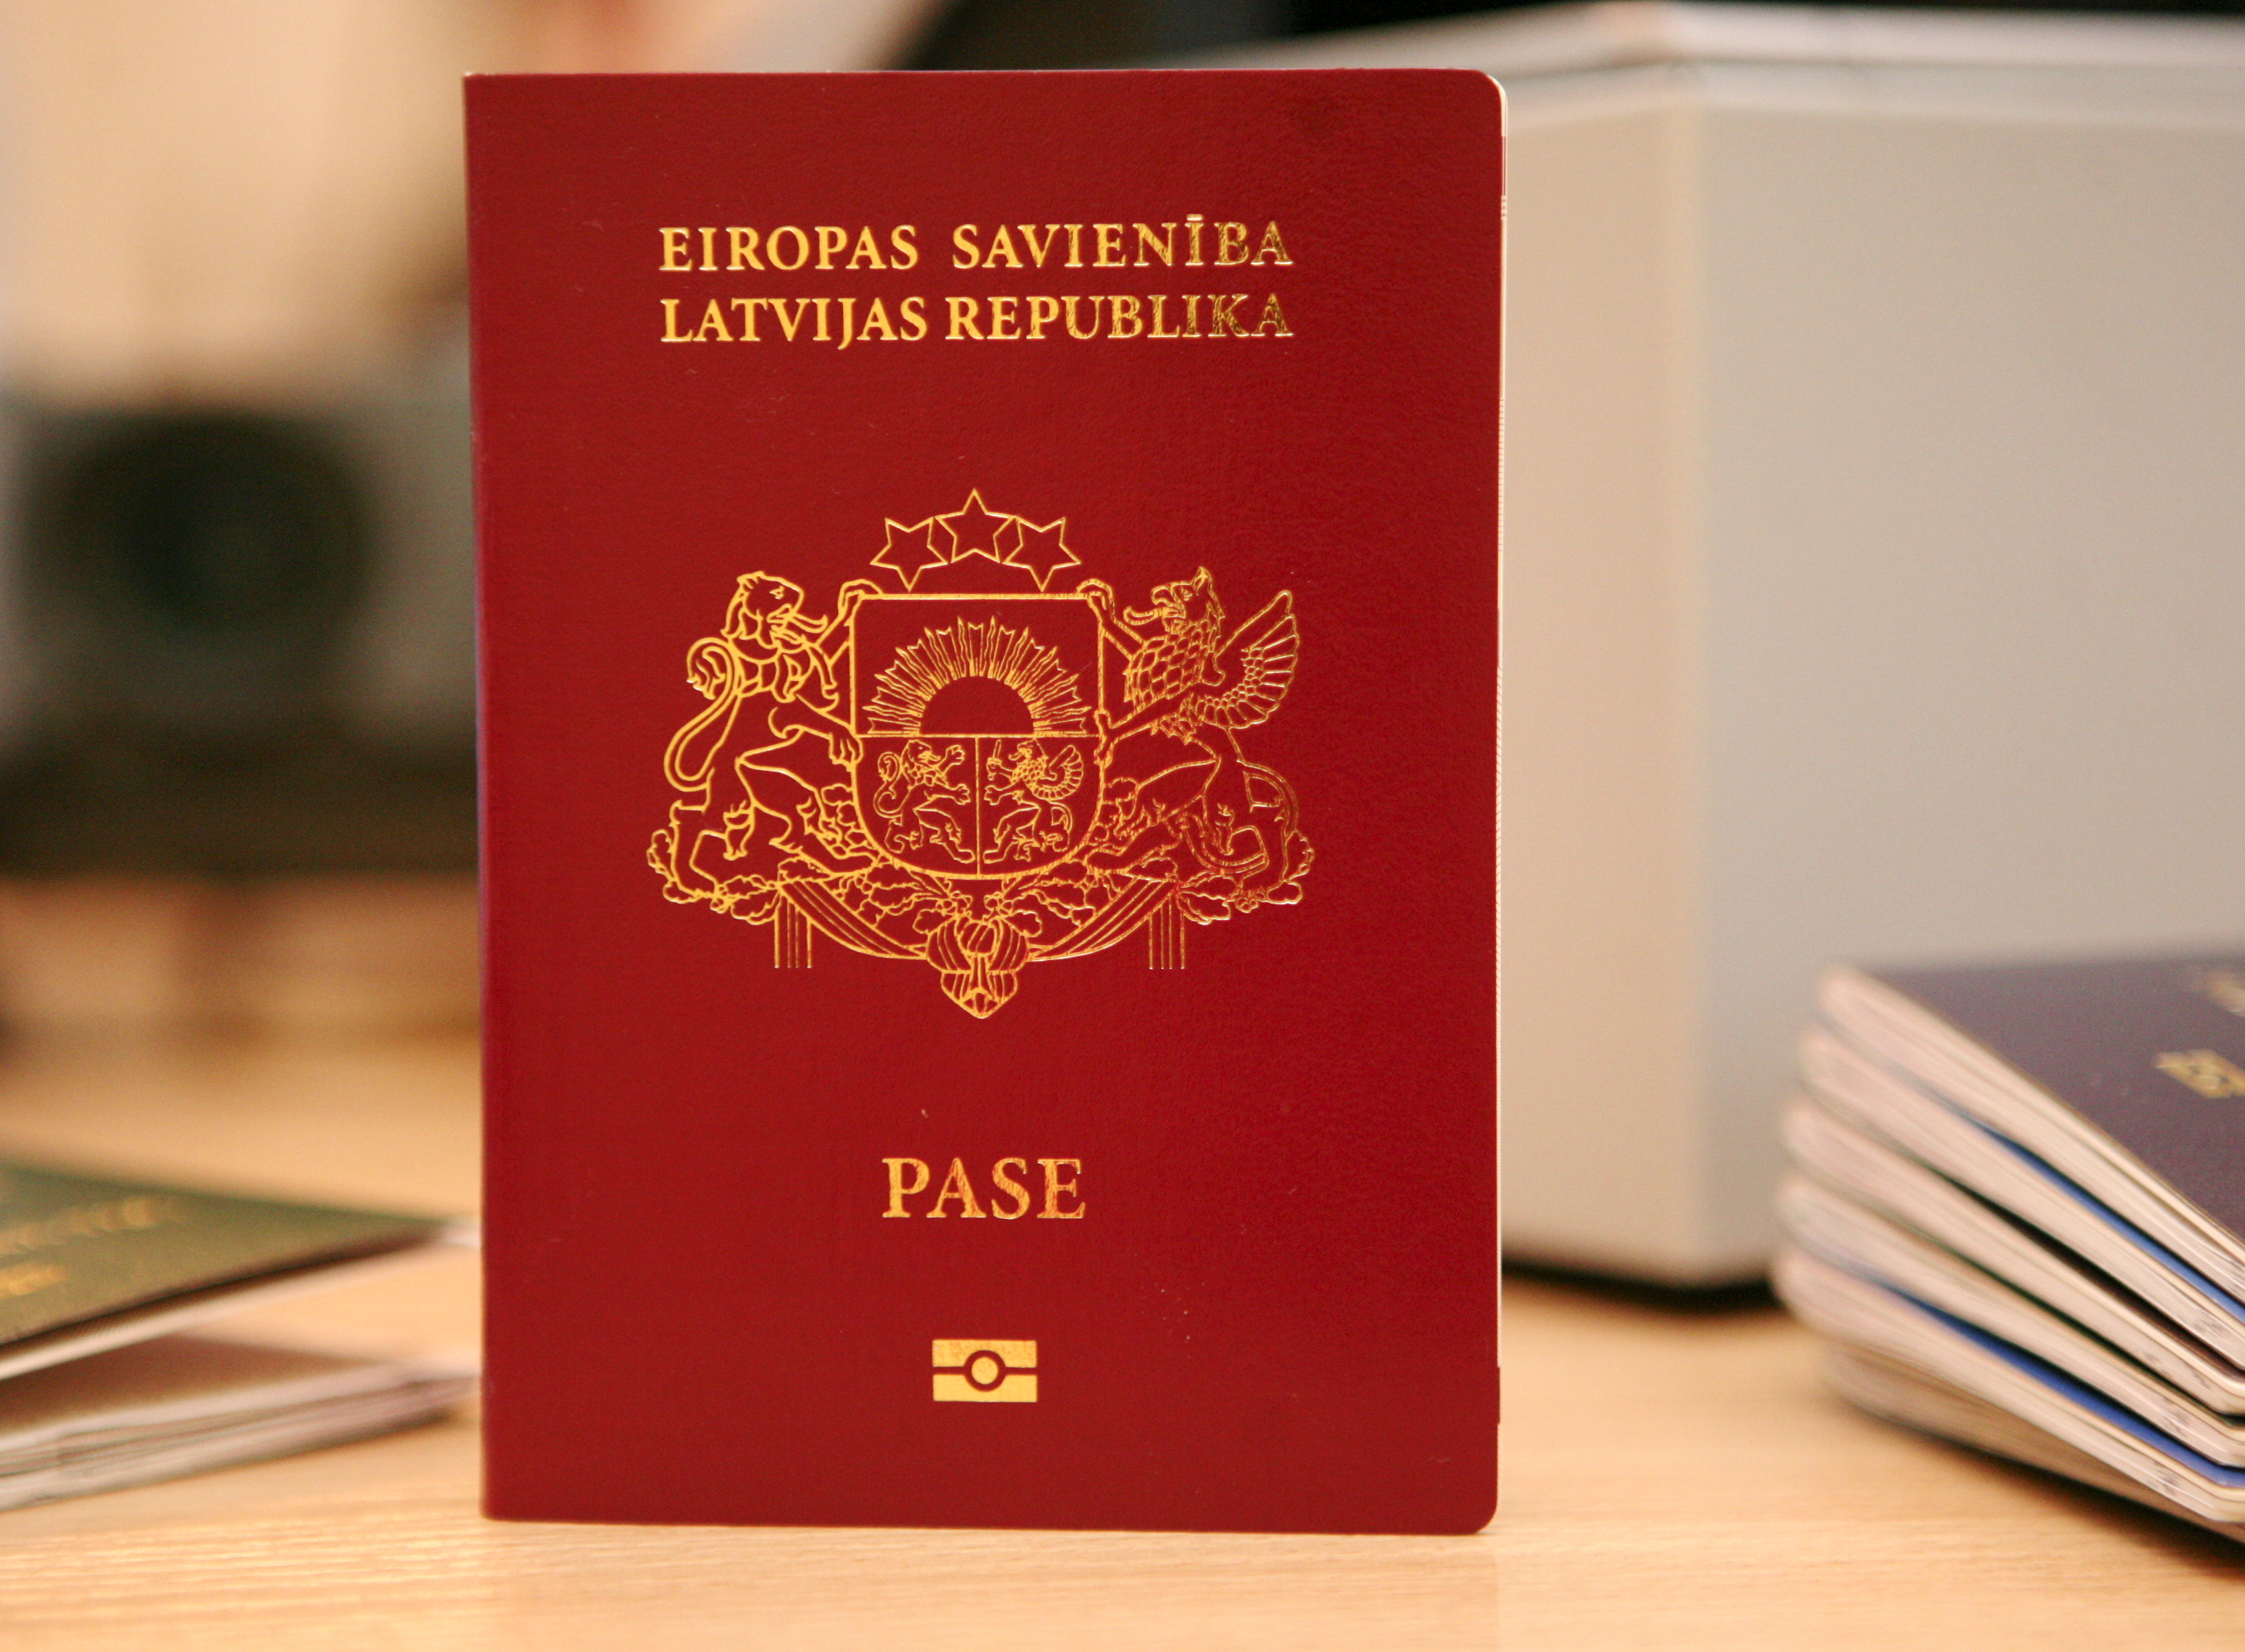 Как оформить двойное гражданство россия- латвия в 2021 году